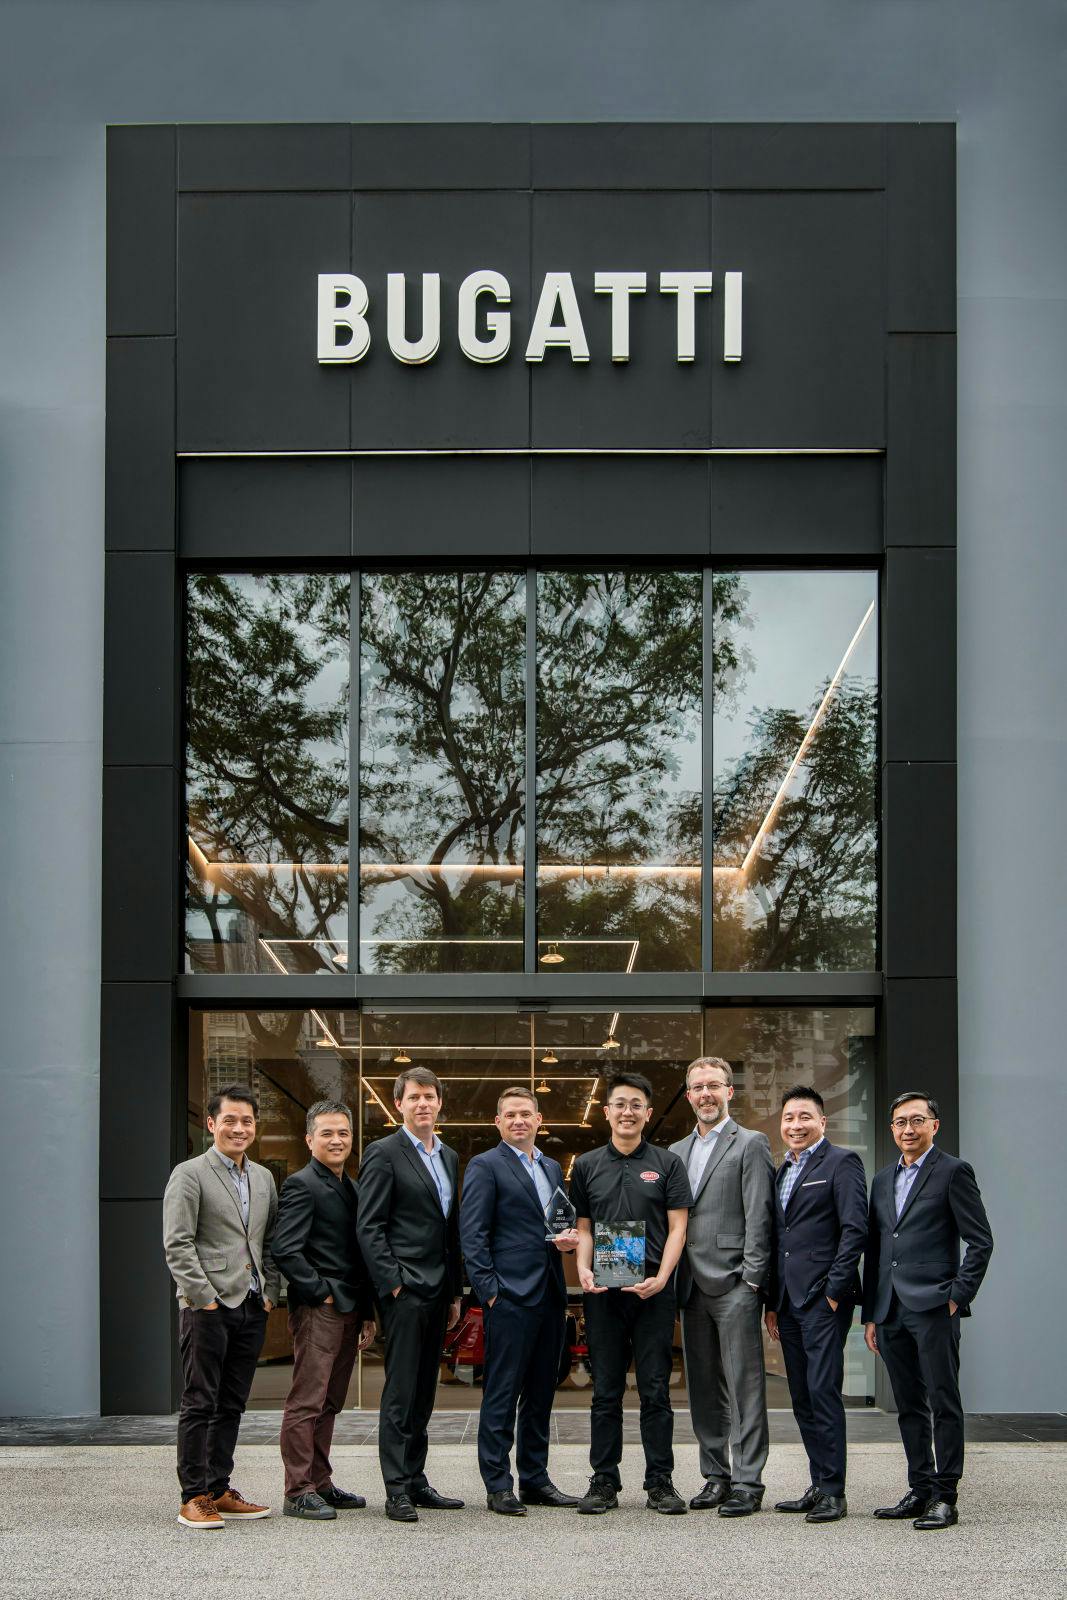 Das Team von Bugatti Singapur gewinnt die Auszeichnung "Regional Best Performing Bugatti Service Partner" für das Jahr 2022.